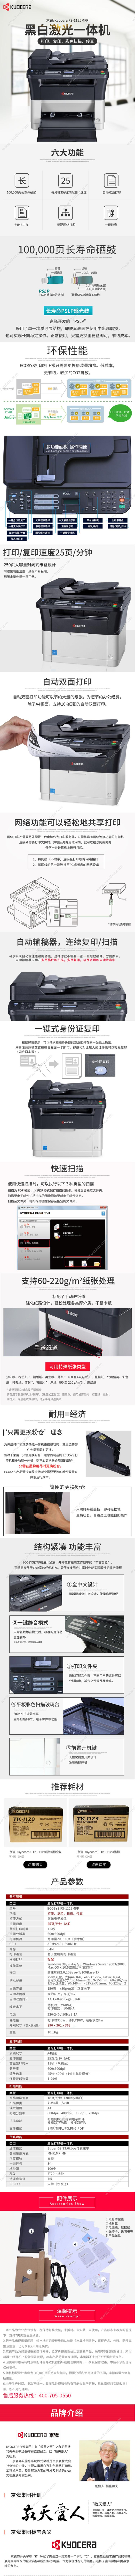 京瓷 Kyocera FS-1125MFP (黑白) A4  打印/复印/扫面/传真/双面/网络 A4黑白激光多功能一体机